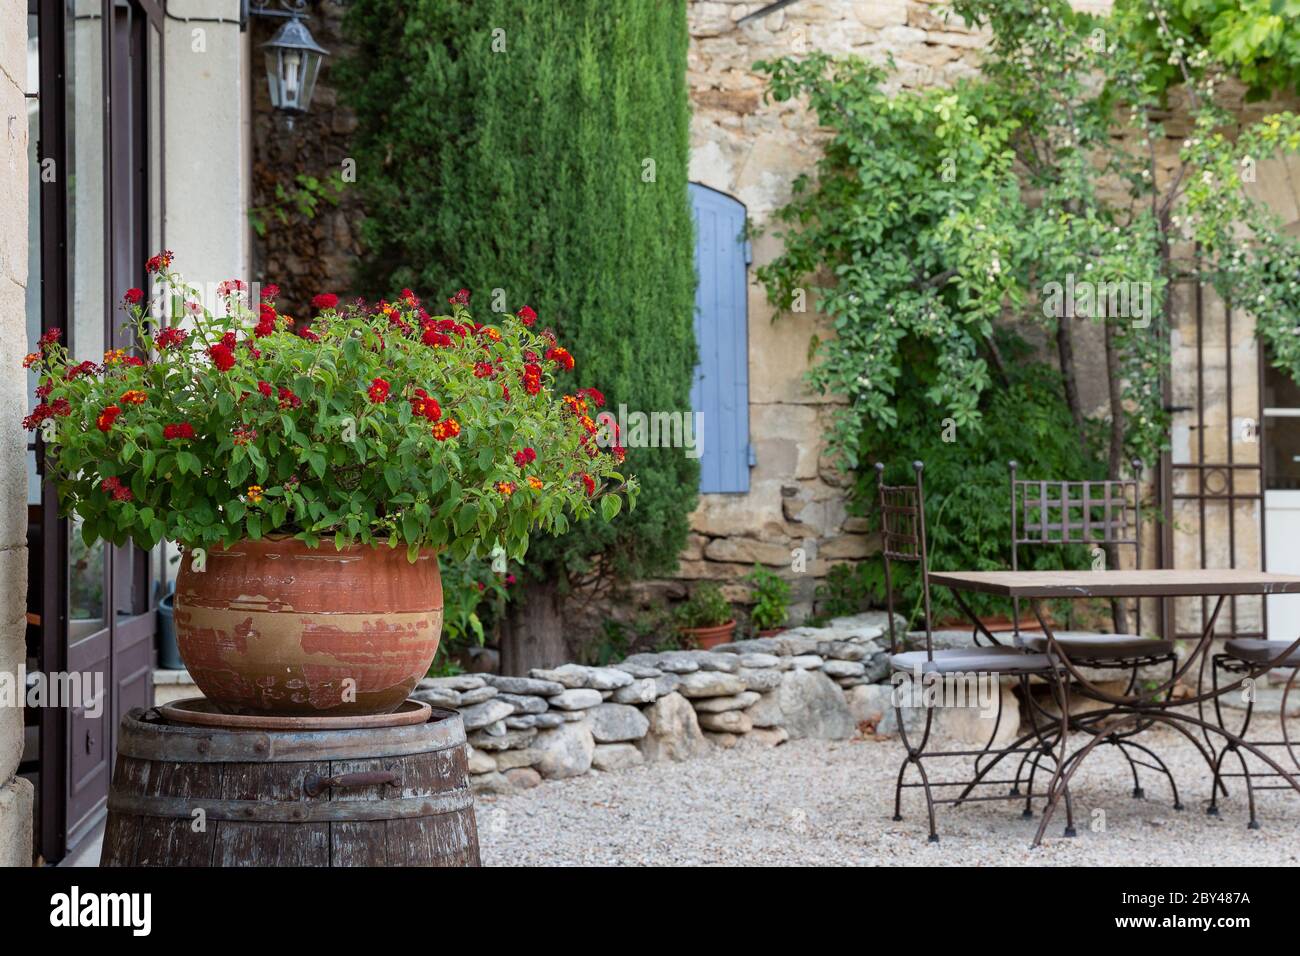 Une terre cuite avec une belle plante aux fleurs rouges dans la cour d'une maison en Provence, France Banque D'Images